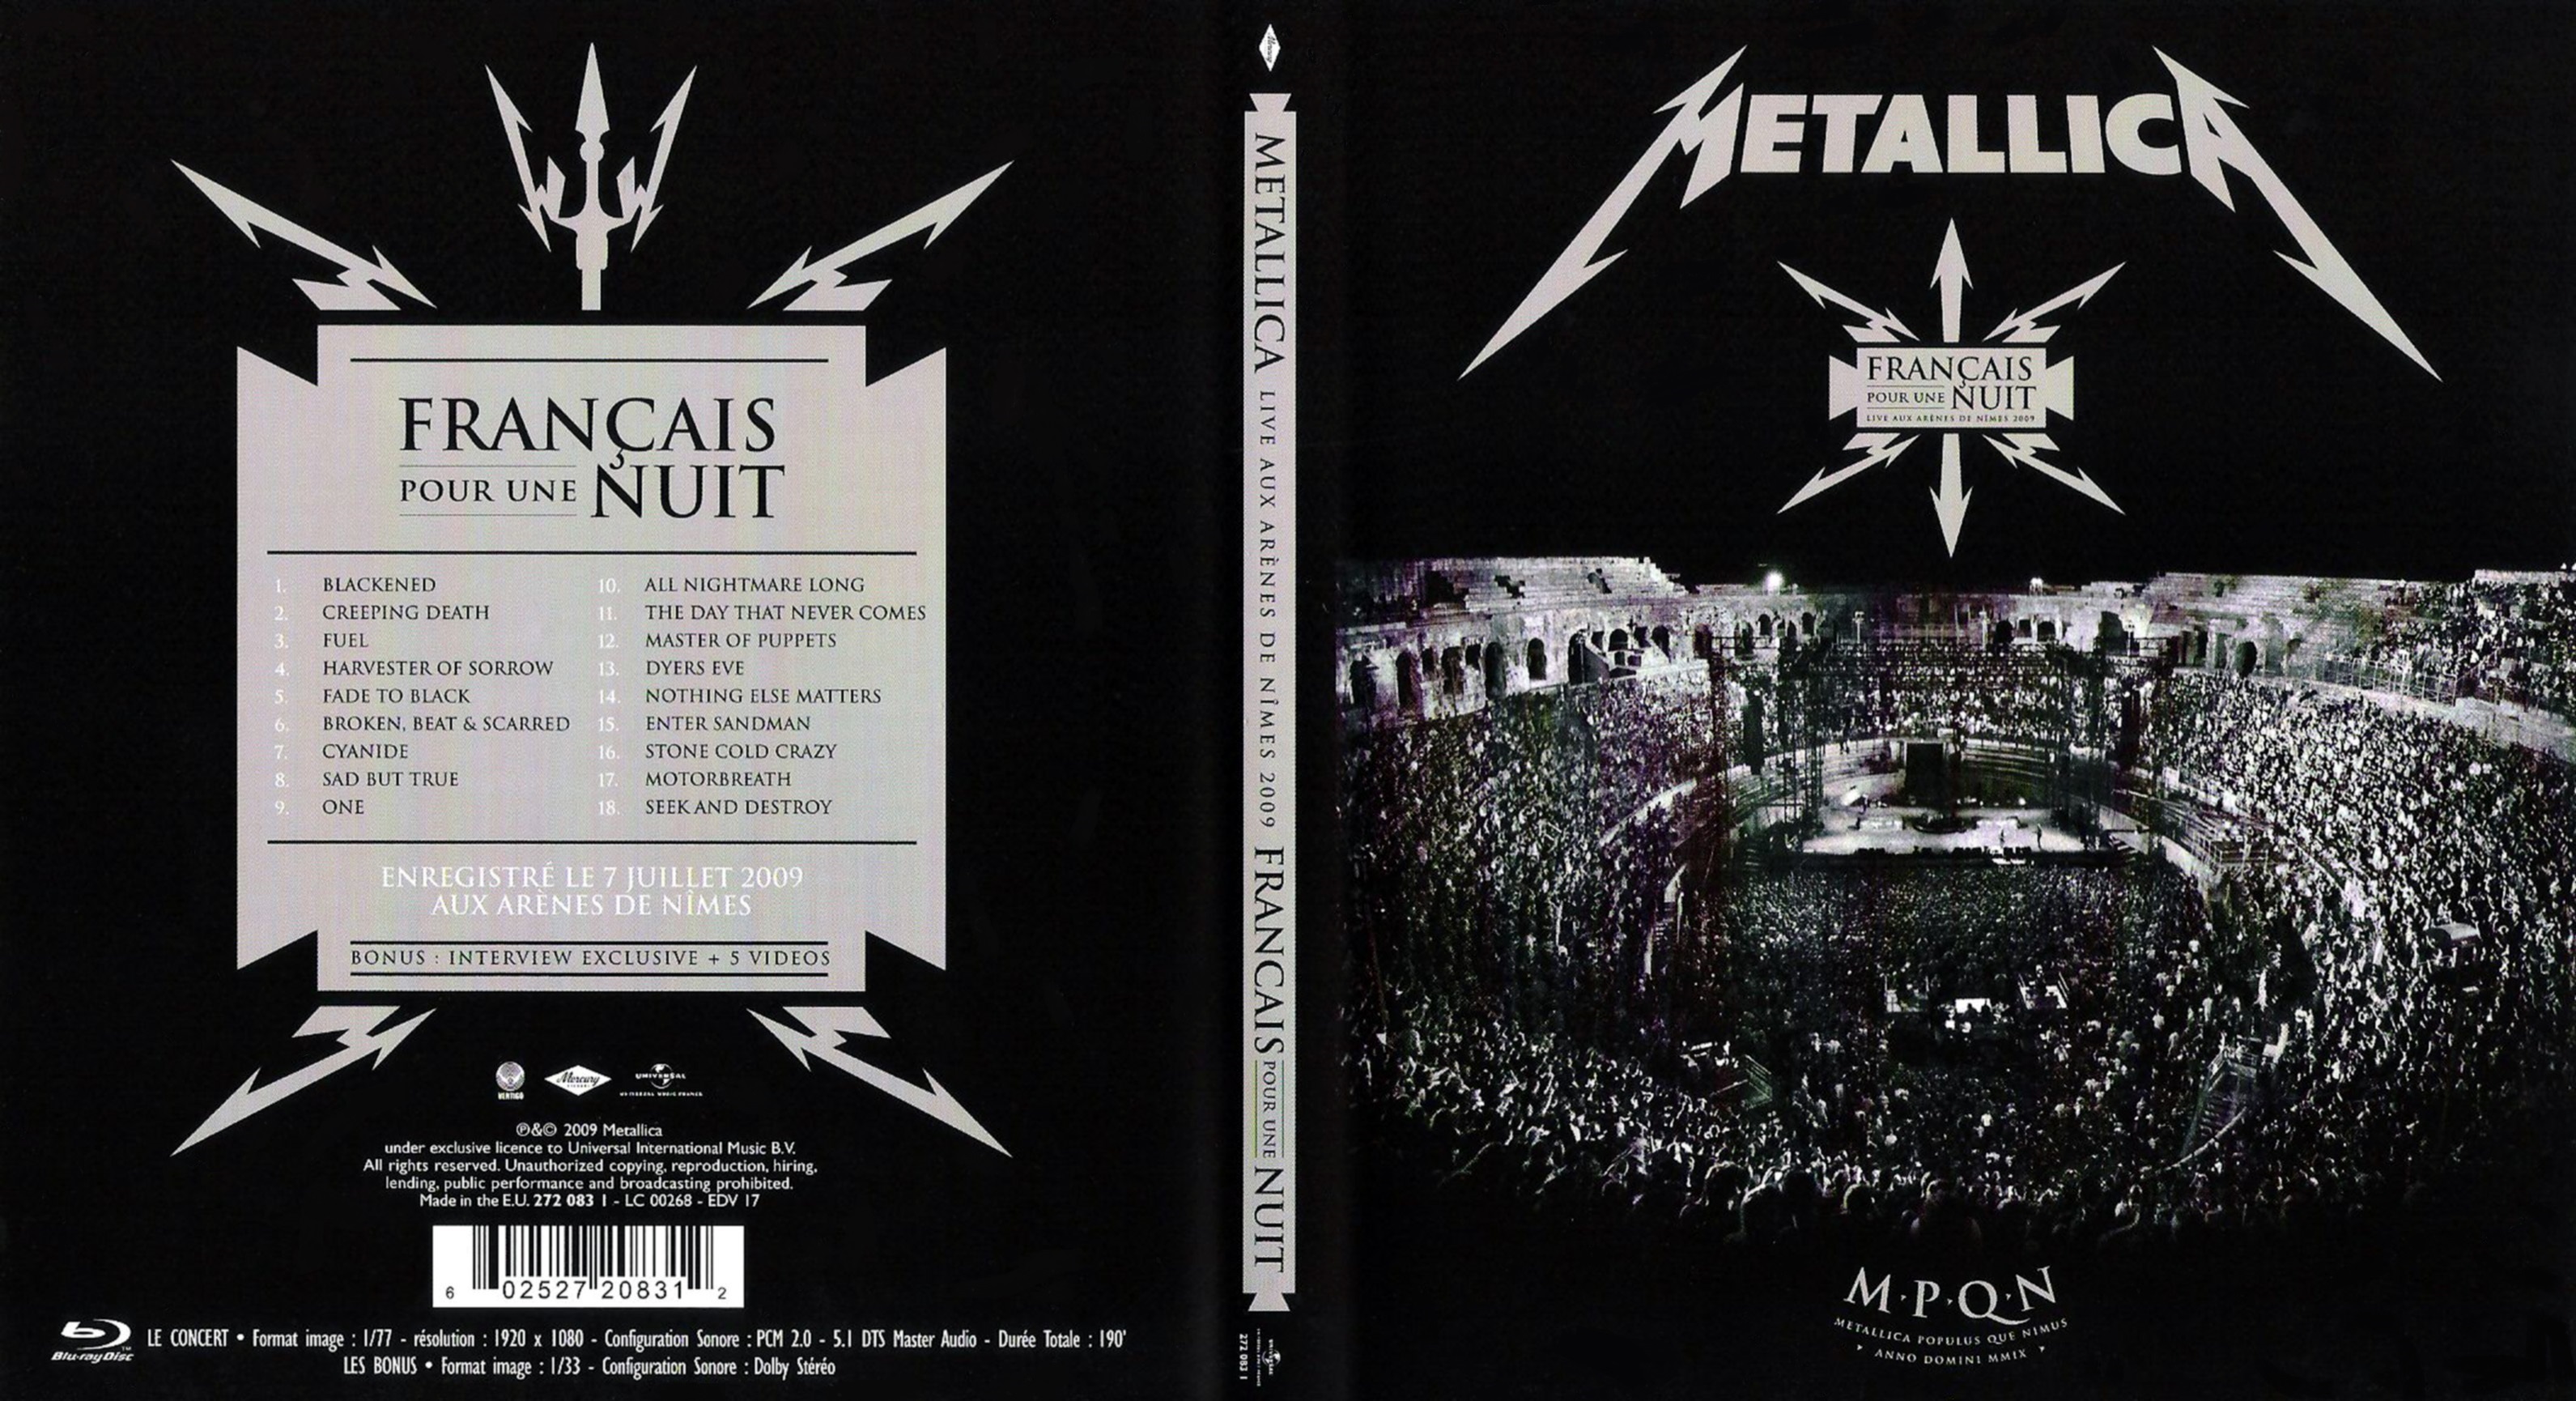 Jaquette DVD Metallica - Francais Pour Une Nuit (BLU-RAY)